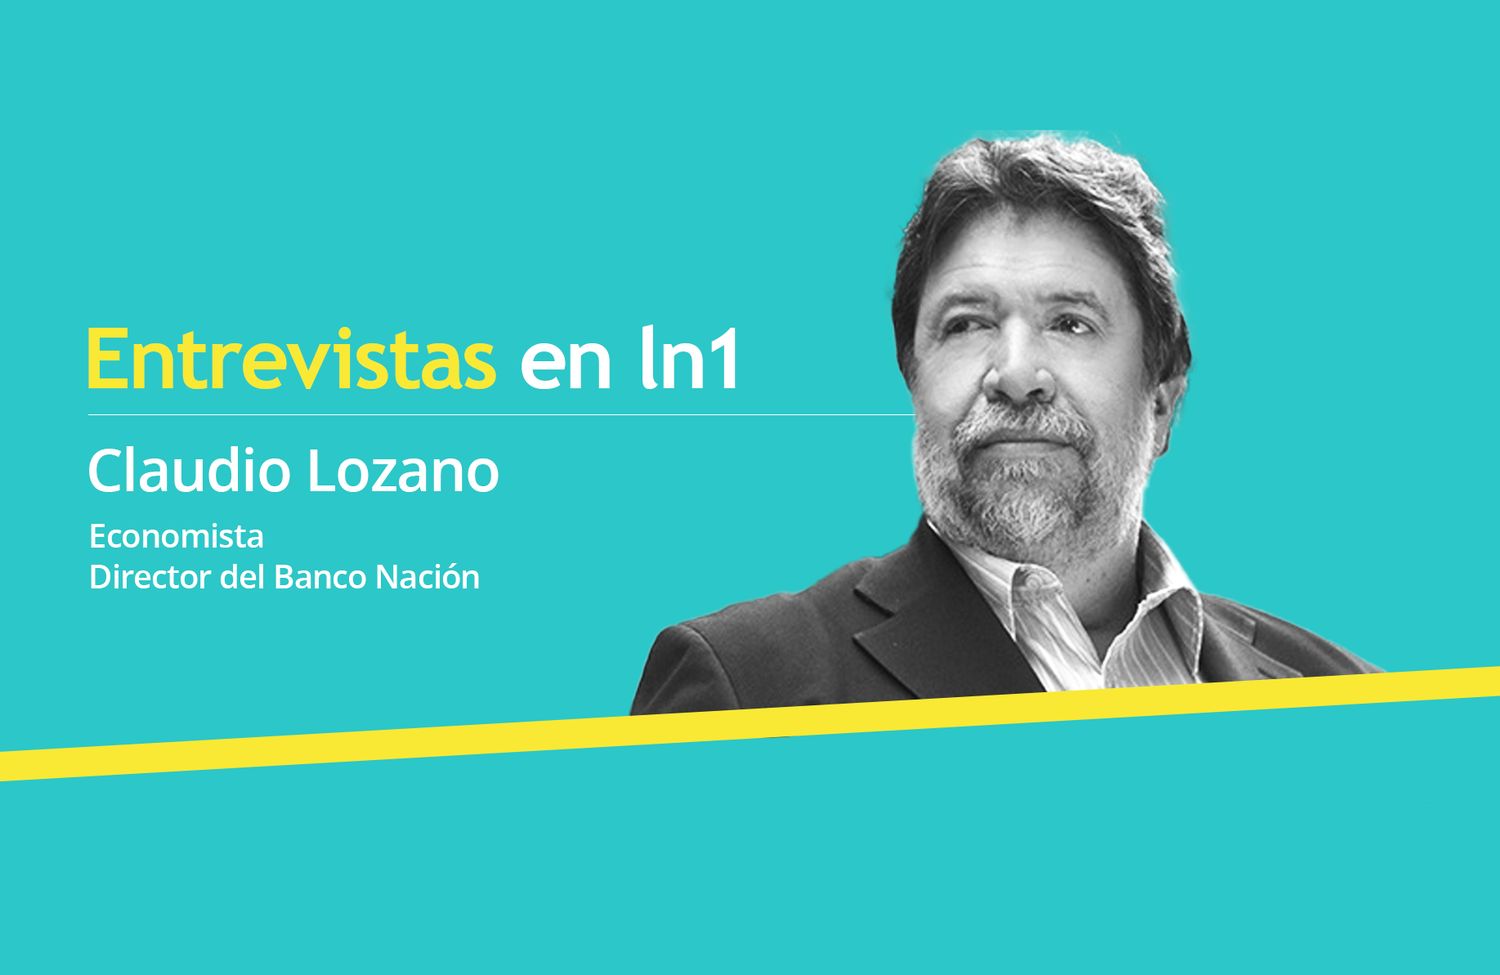 Claudio Lozano y sus claves para la recuperación económica de la Argentina